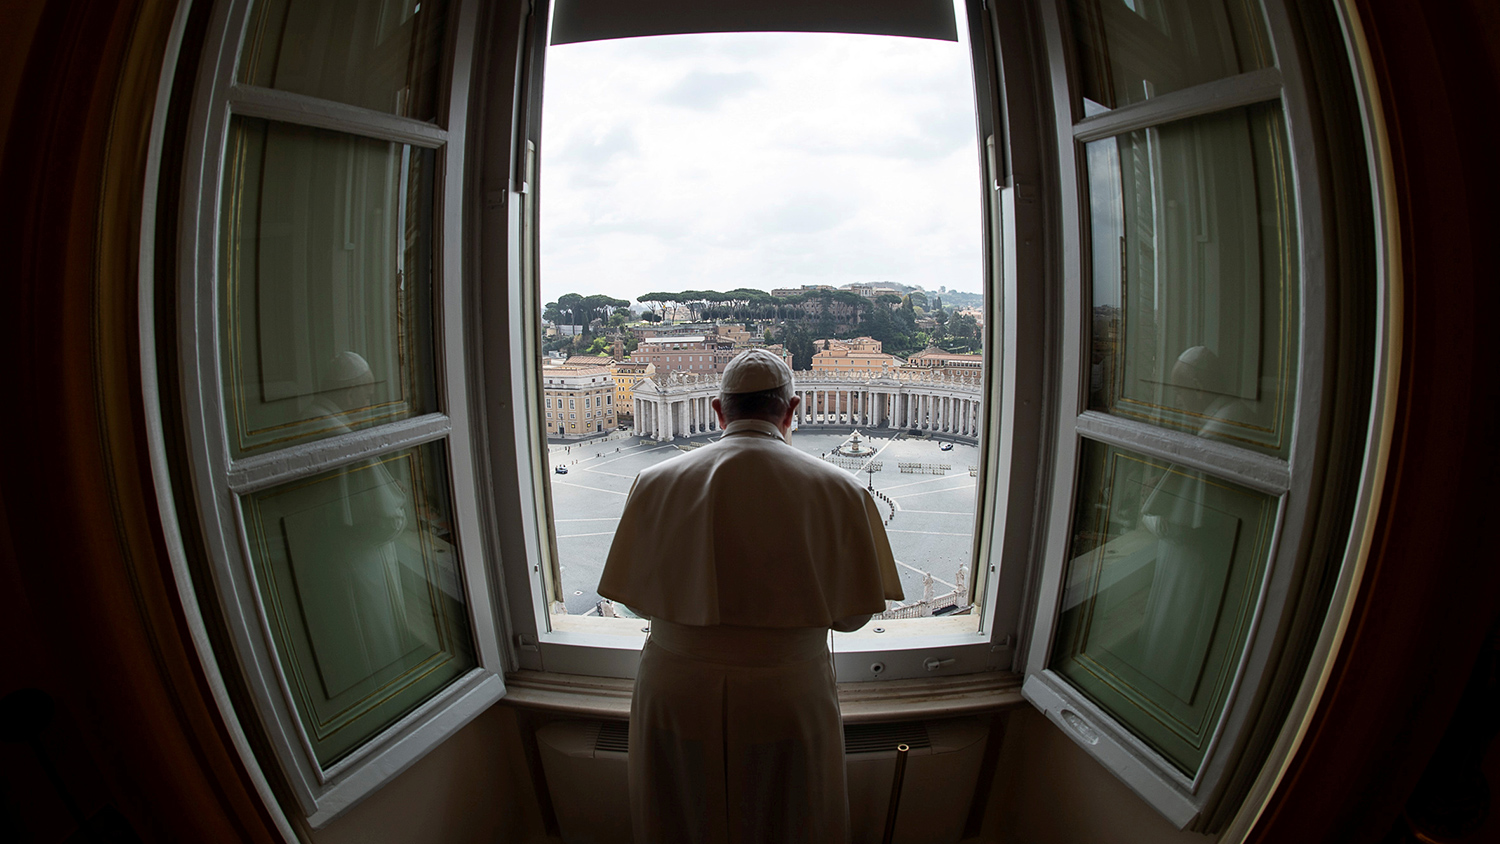 Папа в подкасте поразмышлял о «будничных темах» своей личной жизни